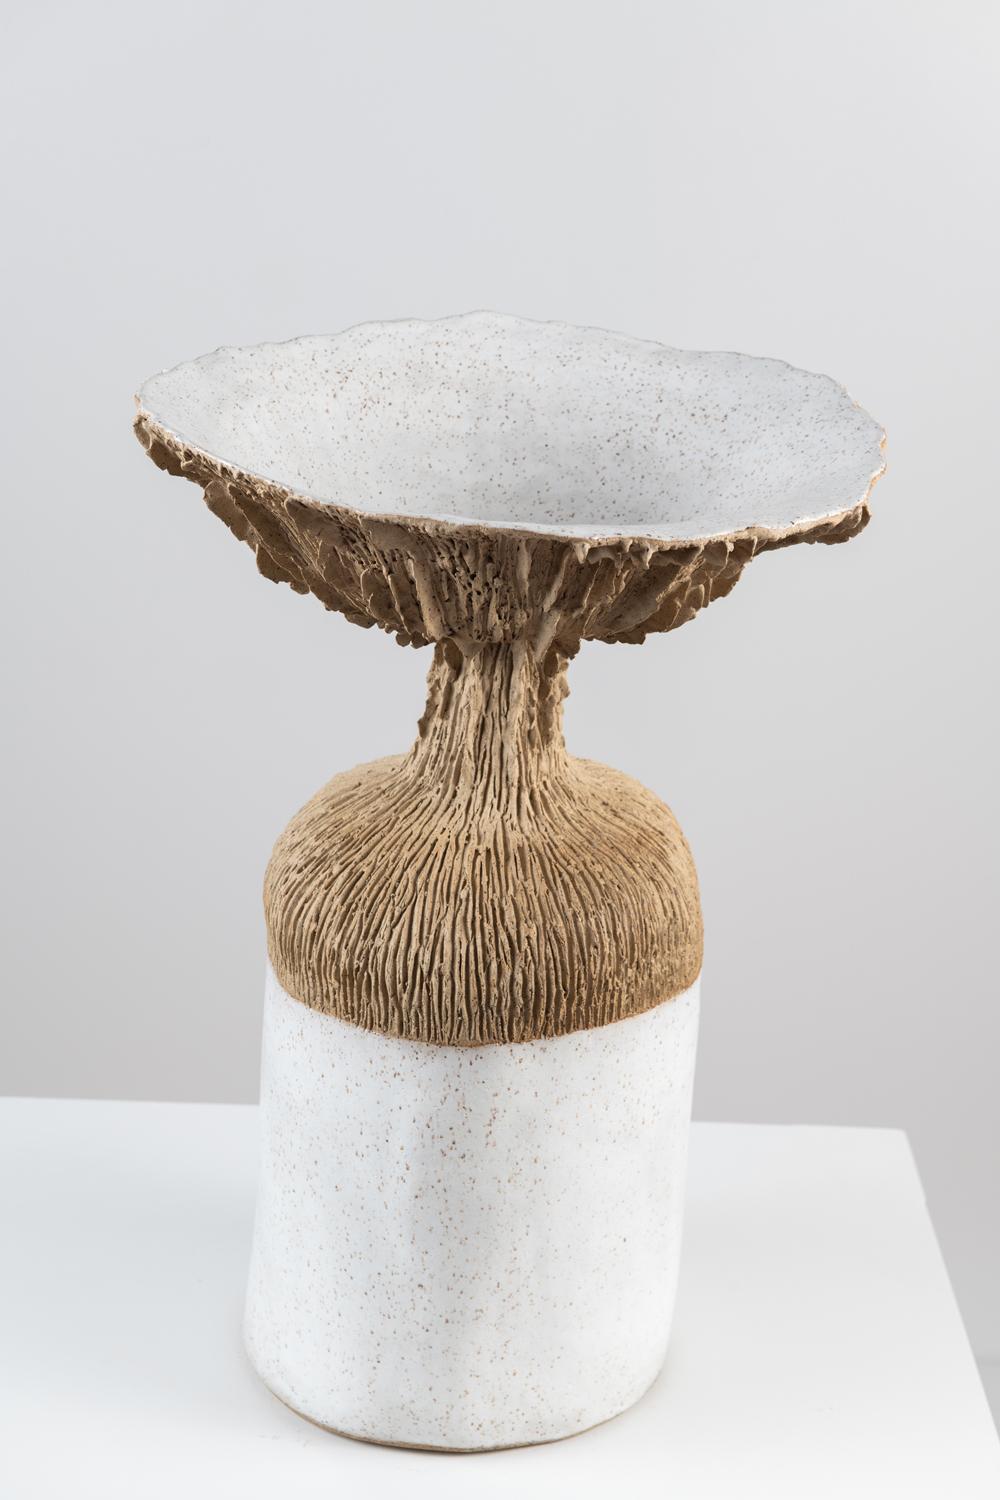 Contemporary Trombetta Vessel in Glazed Stoneware by Trish DeMasi For Sale